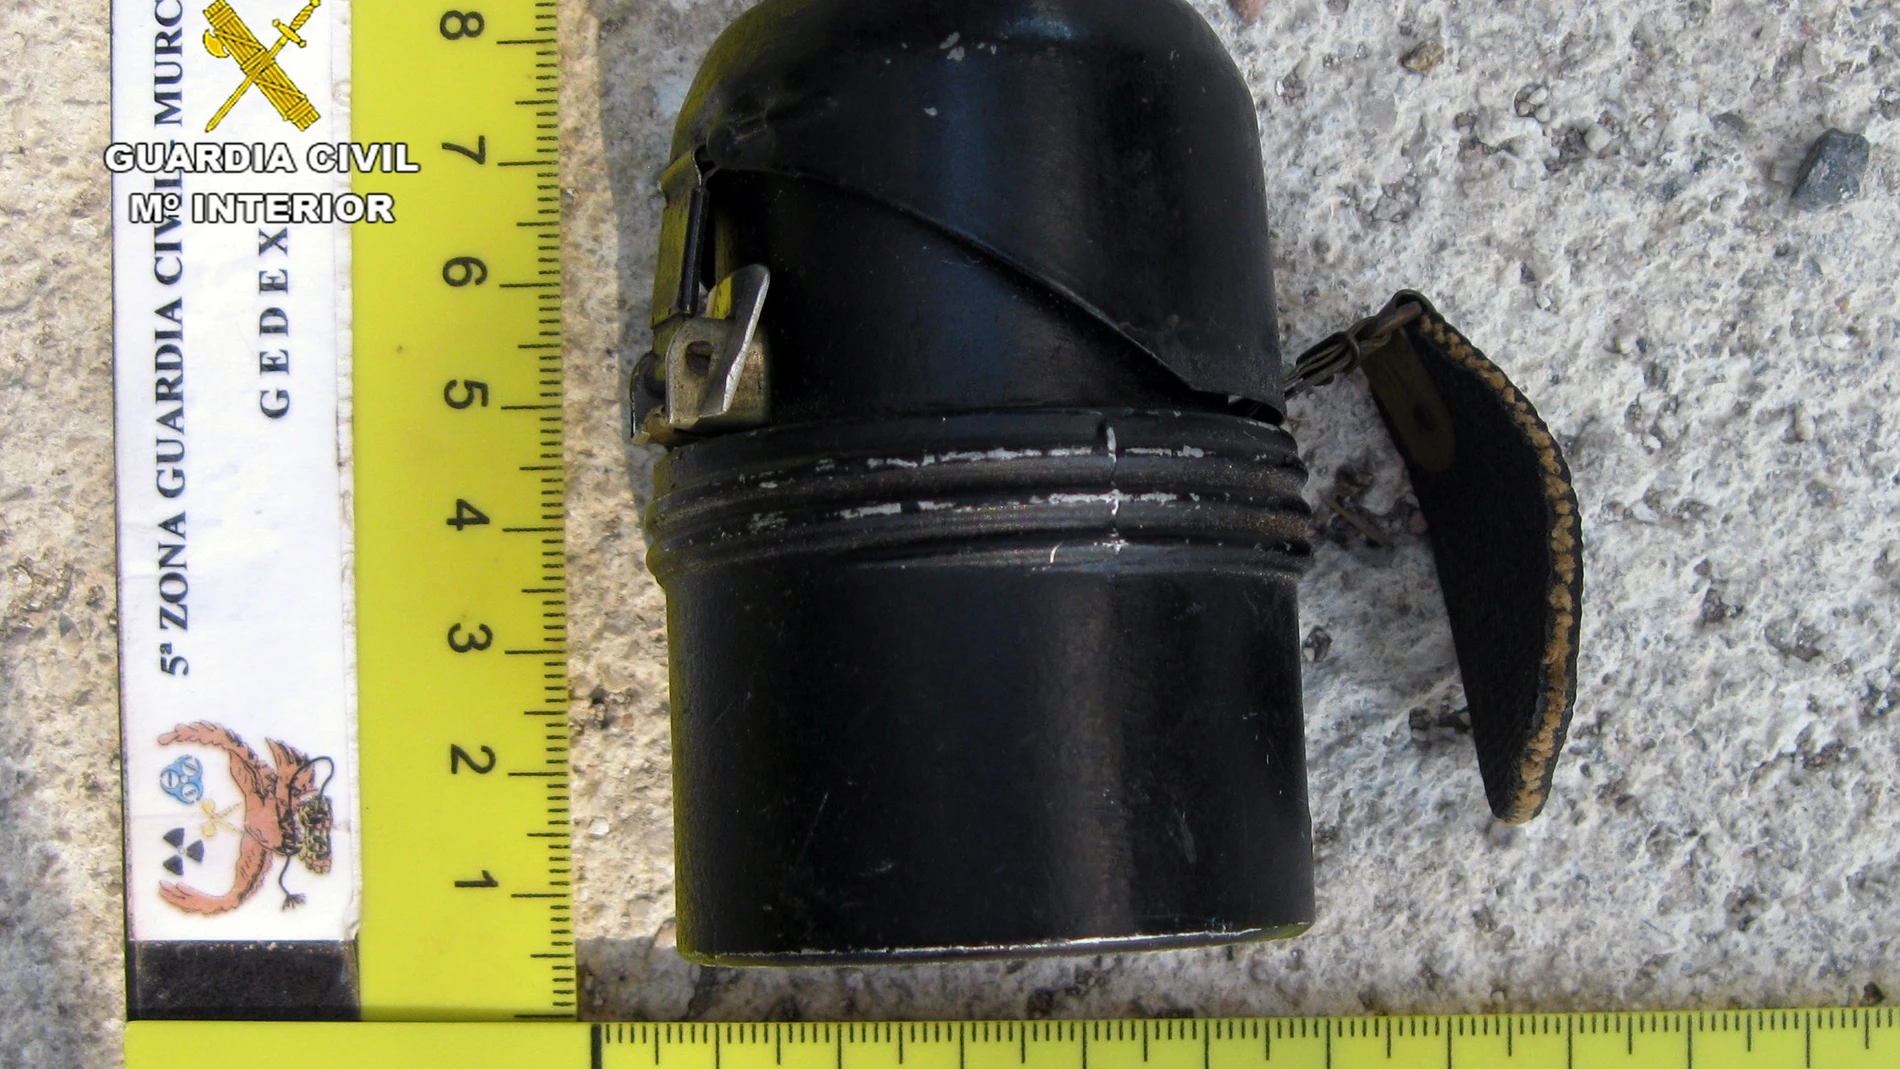 Sucesos.- La Guardia Civil desactiva una granada de mano de la guerra civil en una vivienda de Alquerías (Murcia)